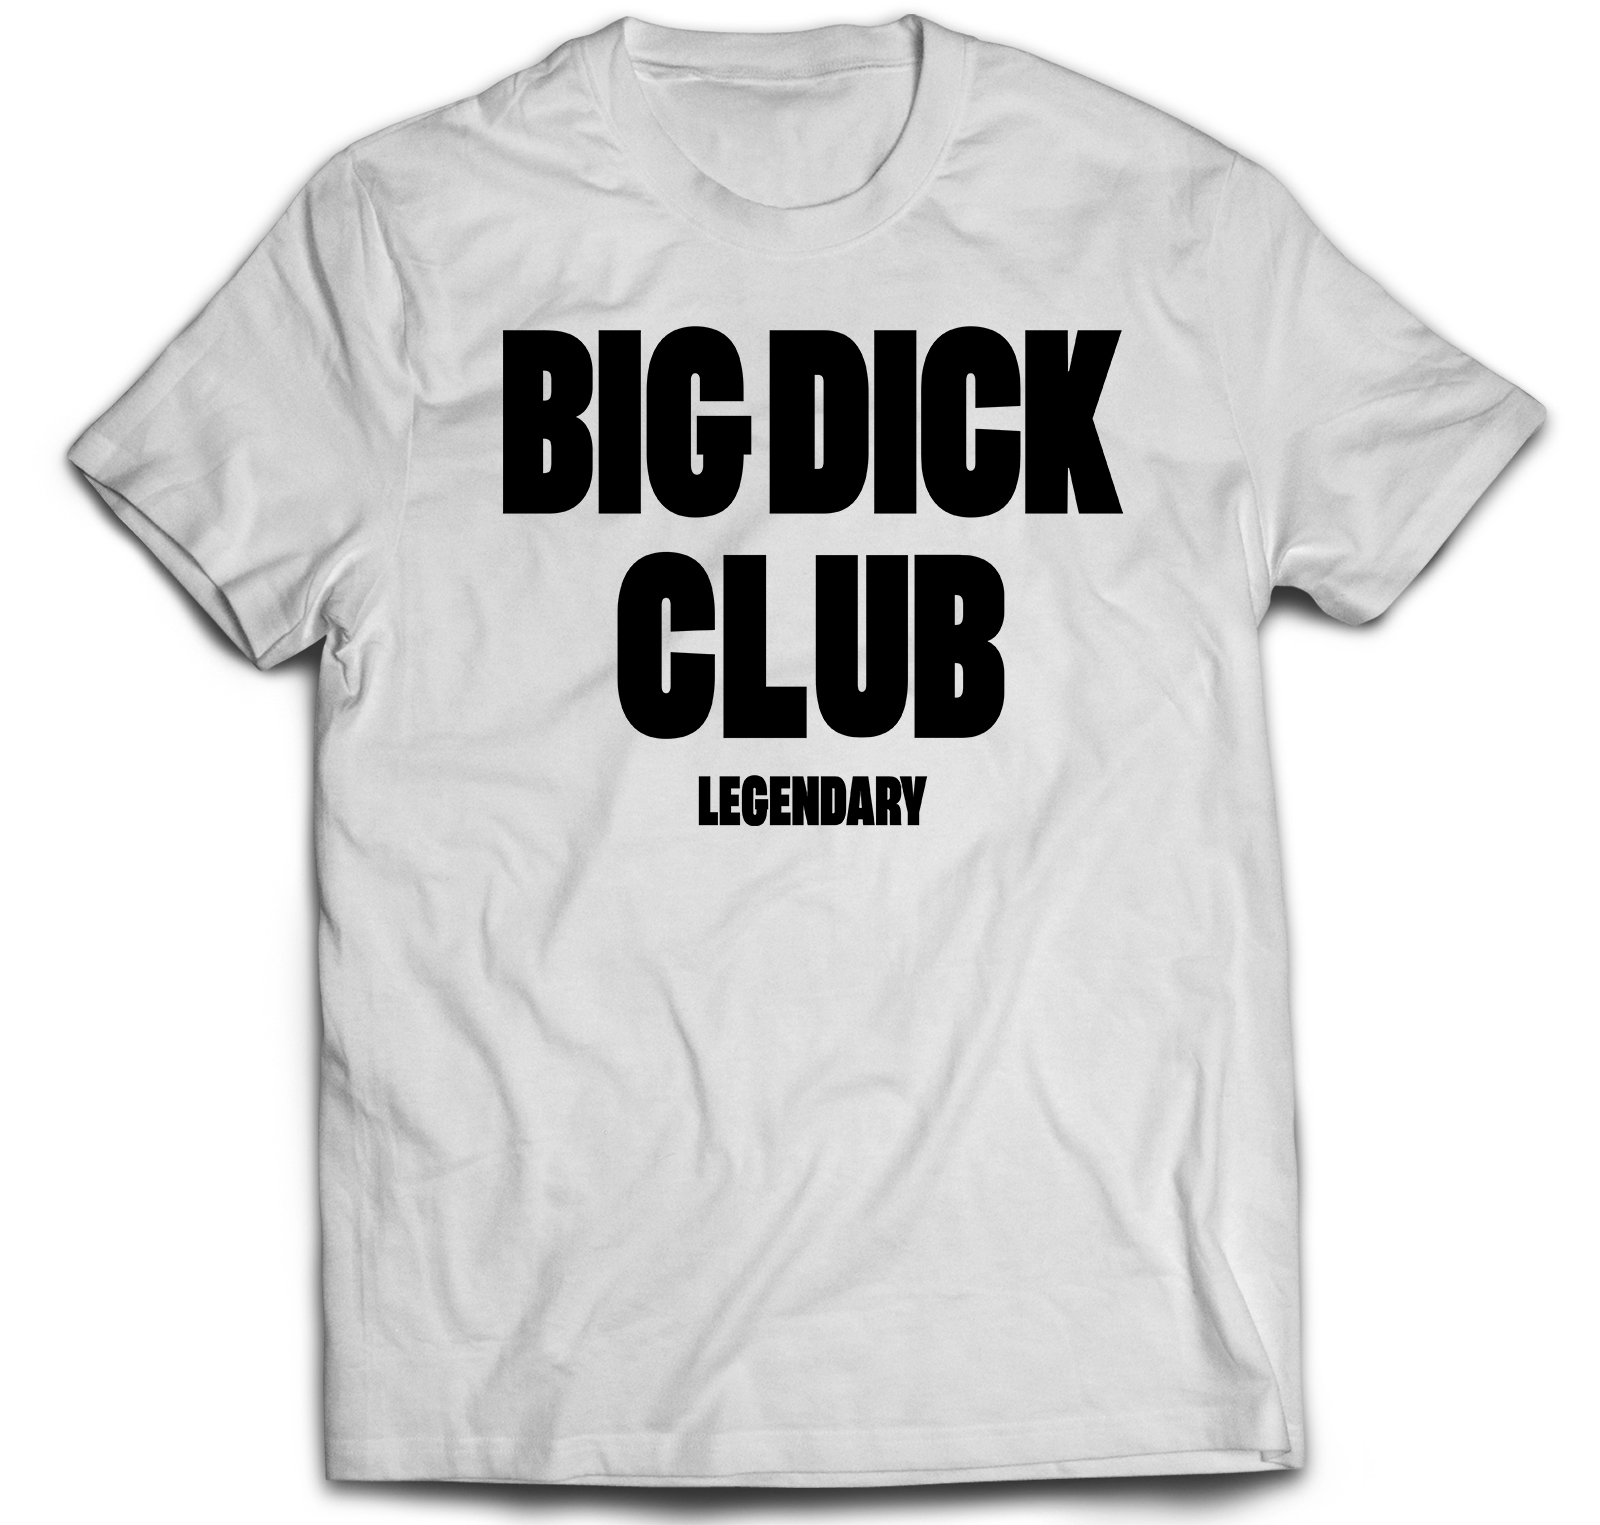 Cocks club. Футболка big dig Club. Футболка big dick. Футболка big dick Club.